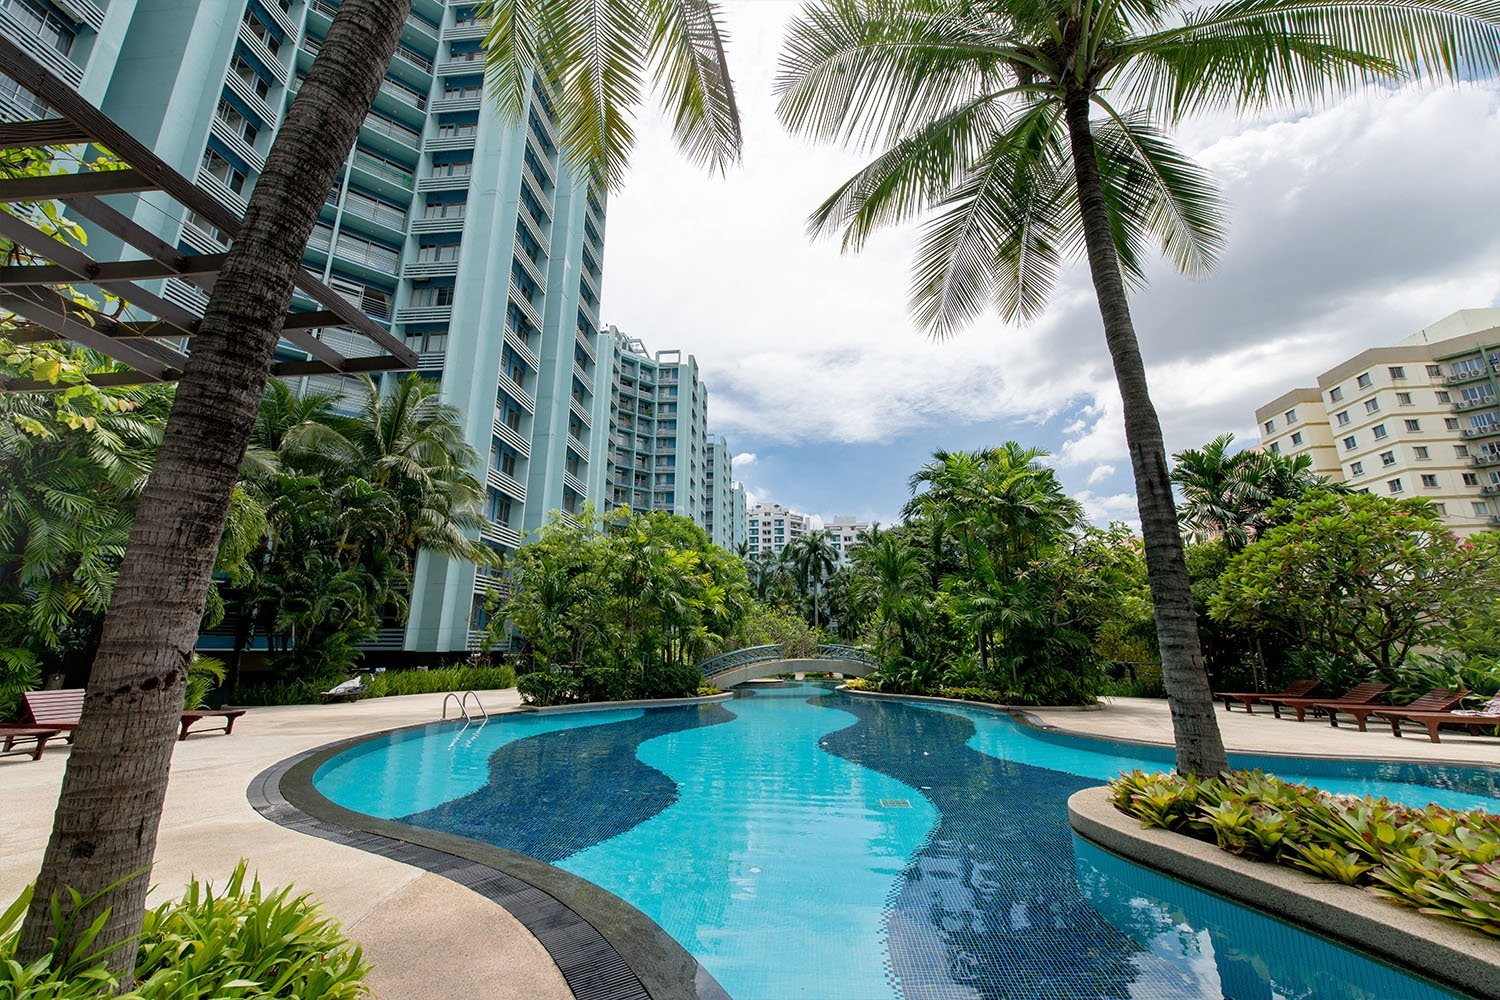 bangkok garden swimming pool